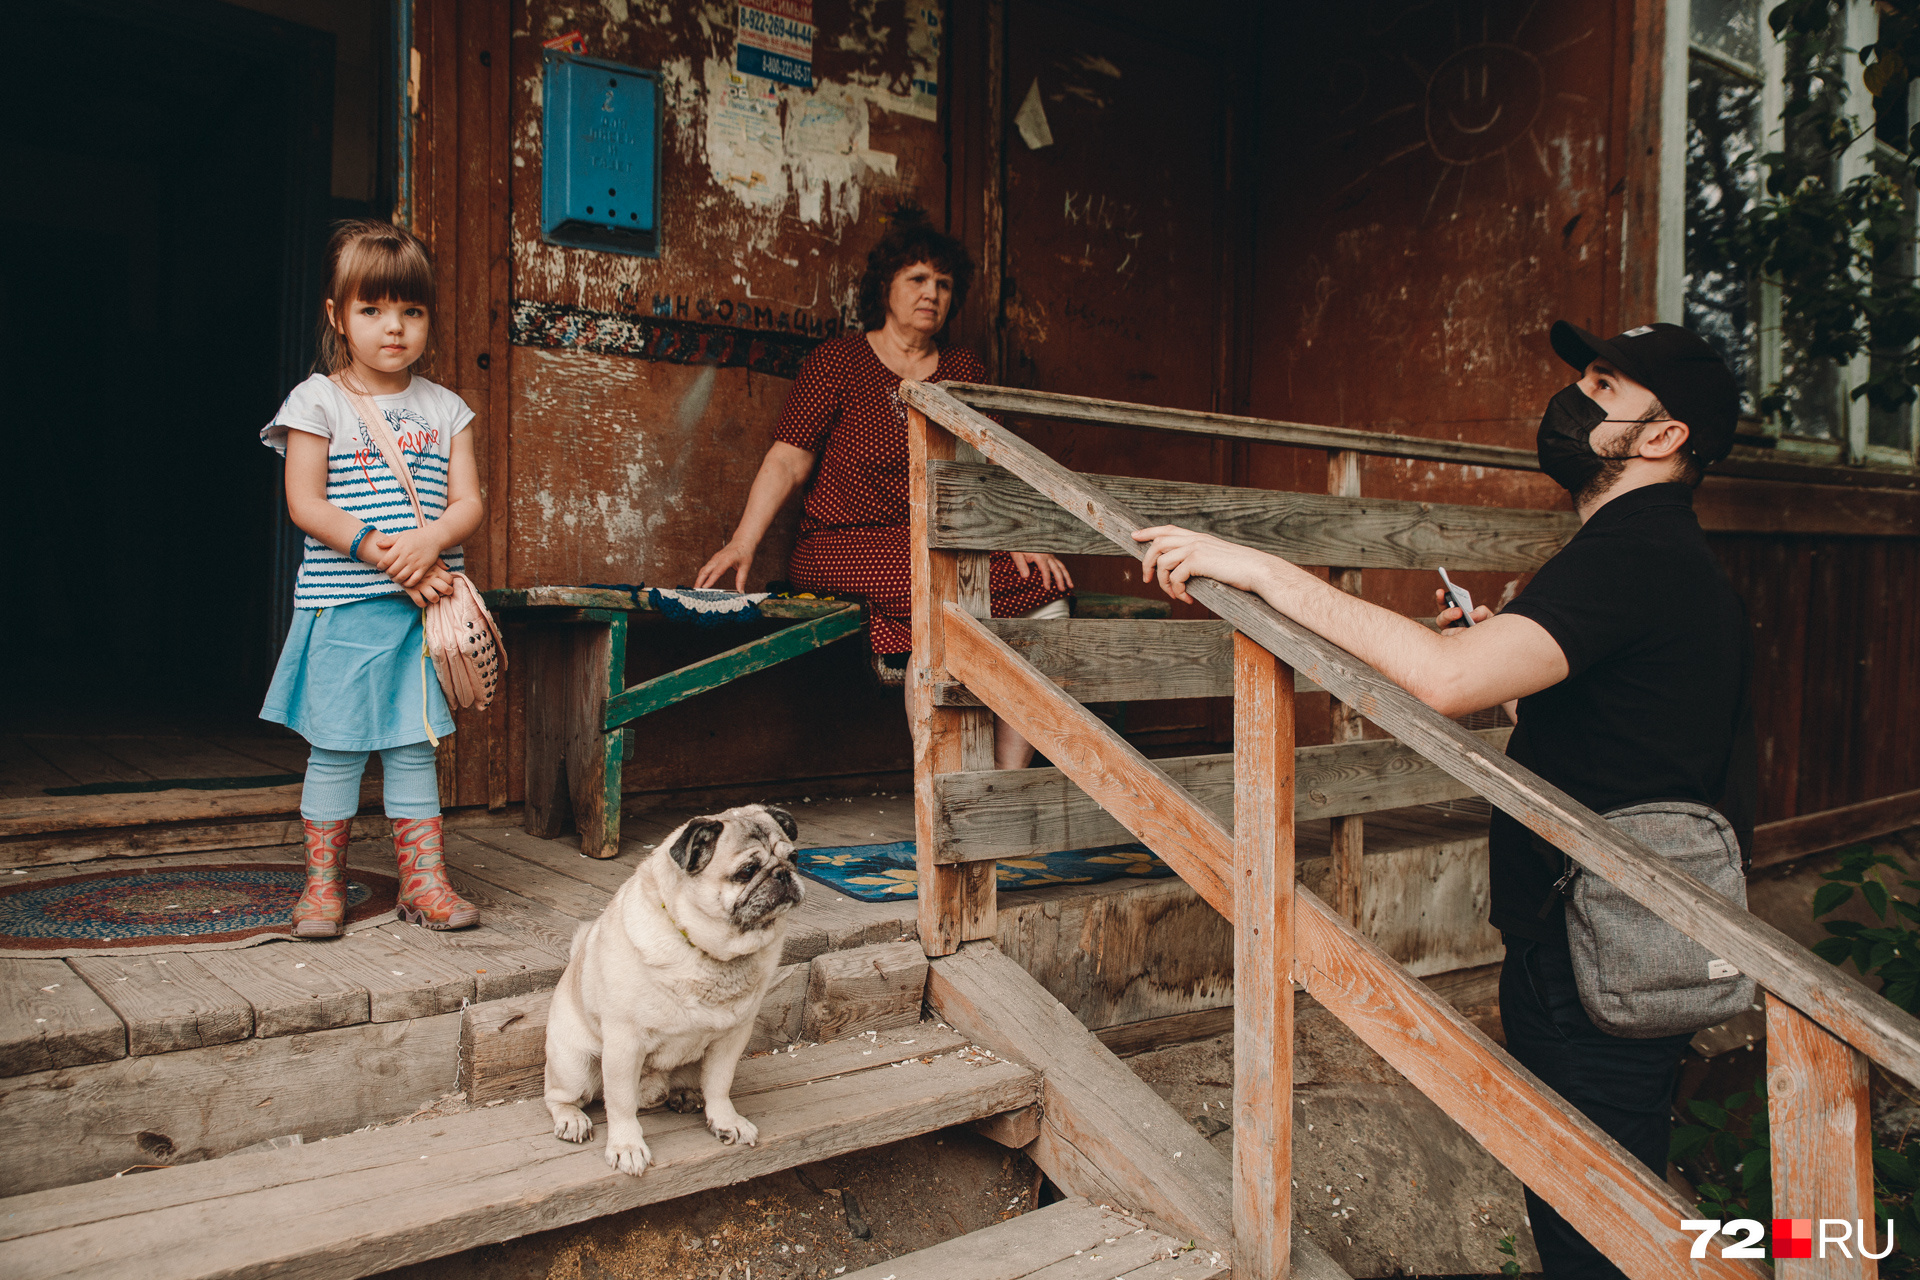 Раиса Толмачова и её семья остались единственными жильцами из подъезда, кого не переселили. Ждут своей очереди и время от времени бегают тушить соседние деревяшки